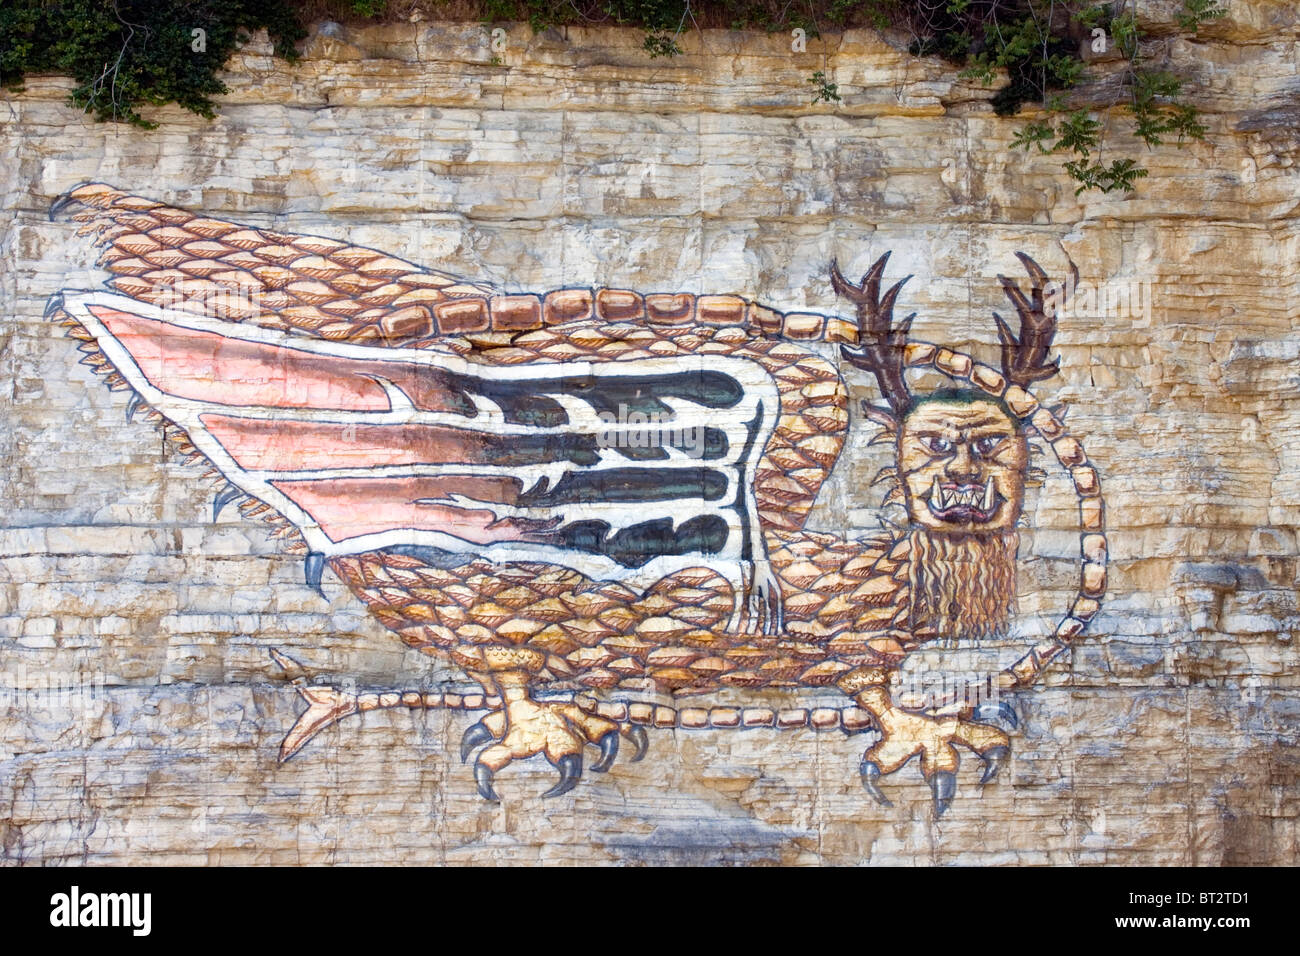 Sur une falaise de la rivière Mississippi près de Alton, Illinois, une peinture représente un monstre ailé légendaire Piasa. Banque D'Images